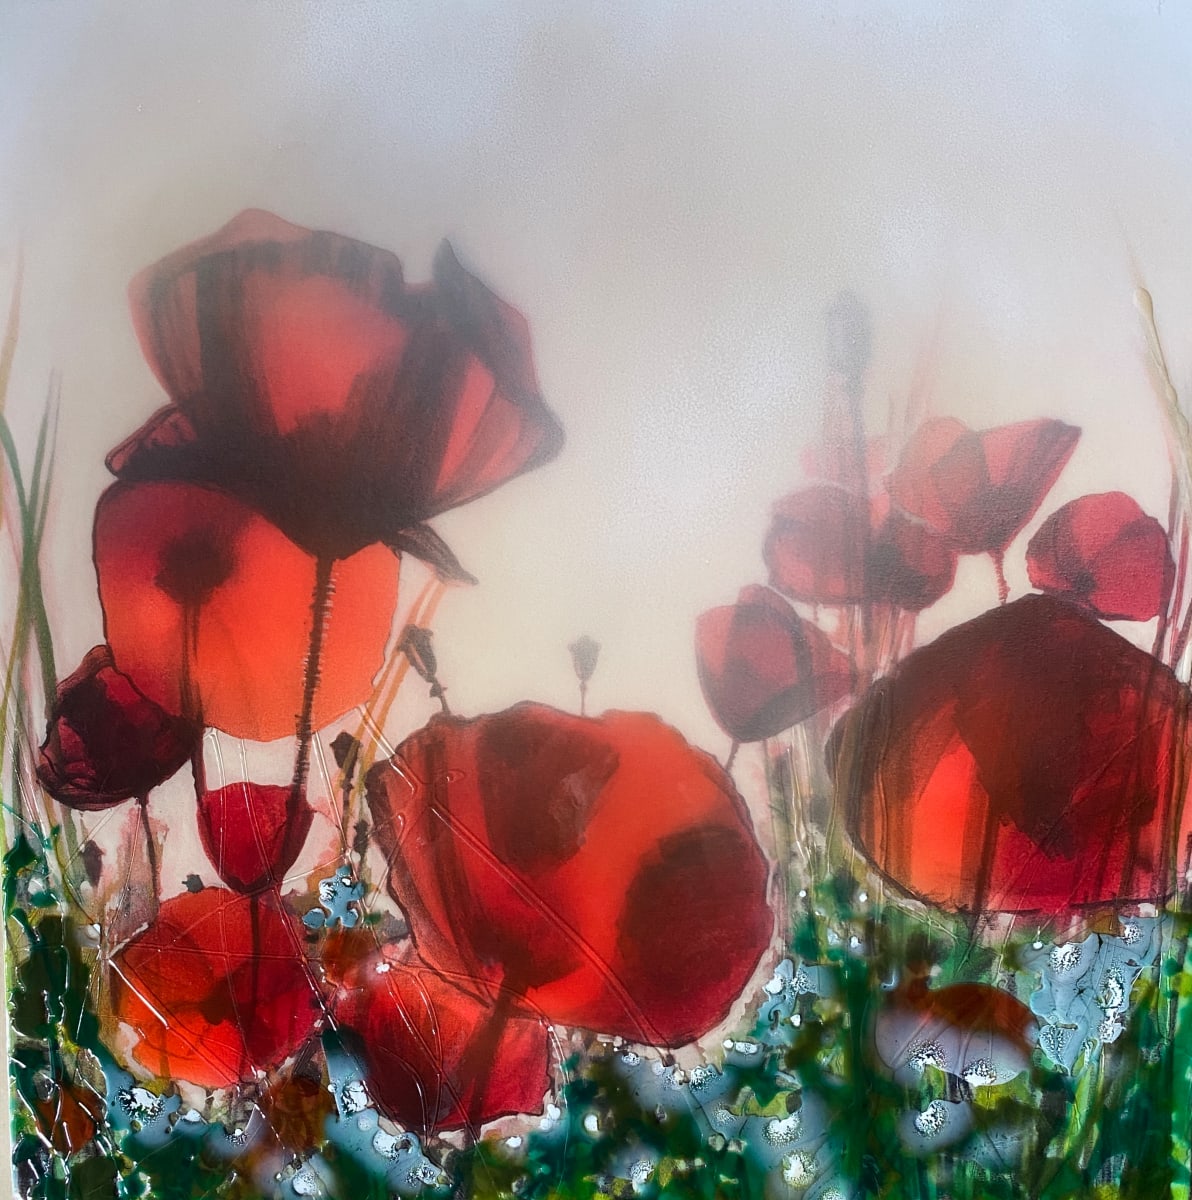 1) Field of poppies by Robin Eckardt 